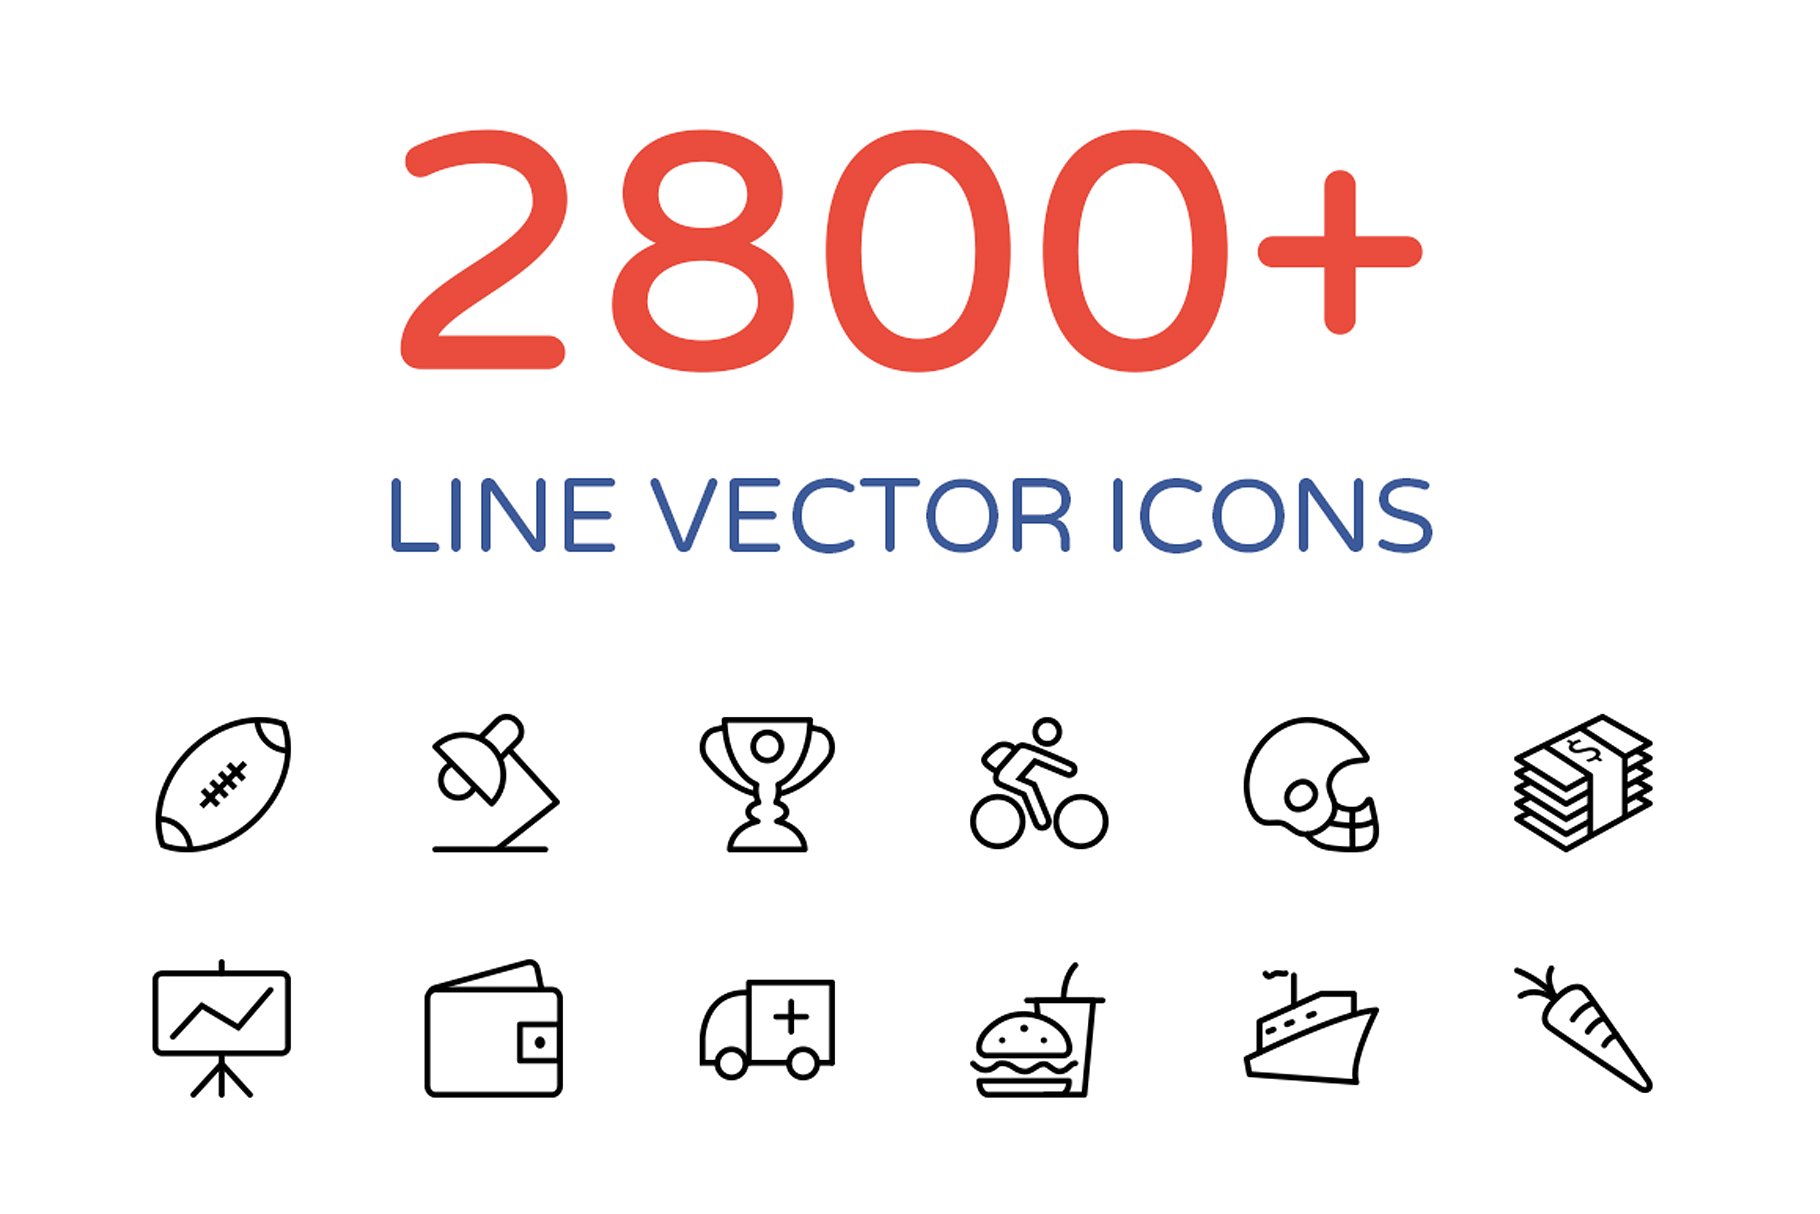 2800+不同领域的线条矢量图标 2800+ Line Vector Icons Bundle插图